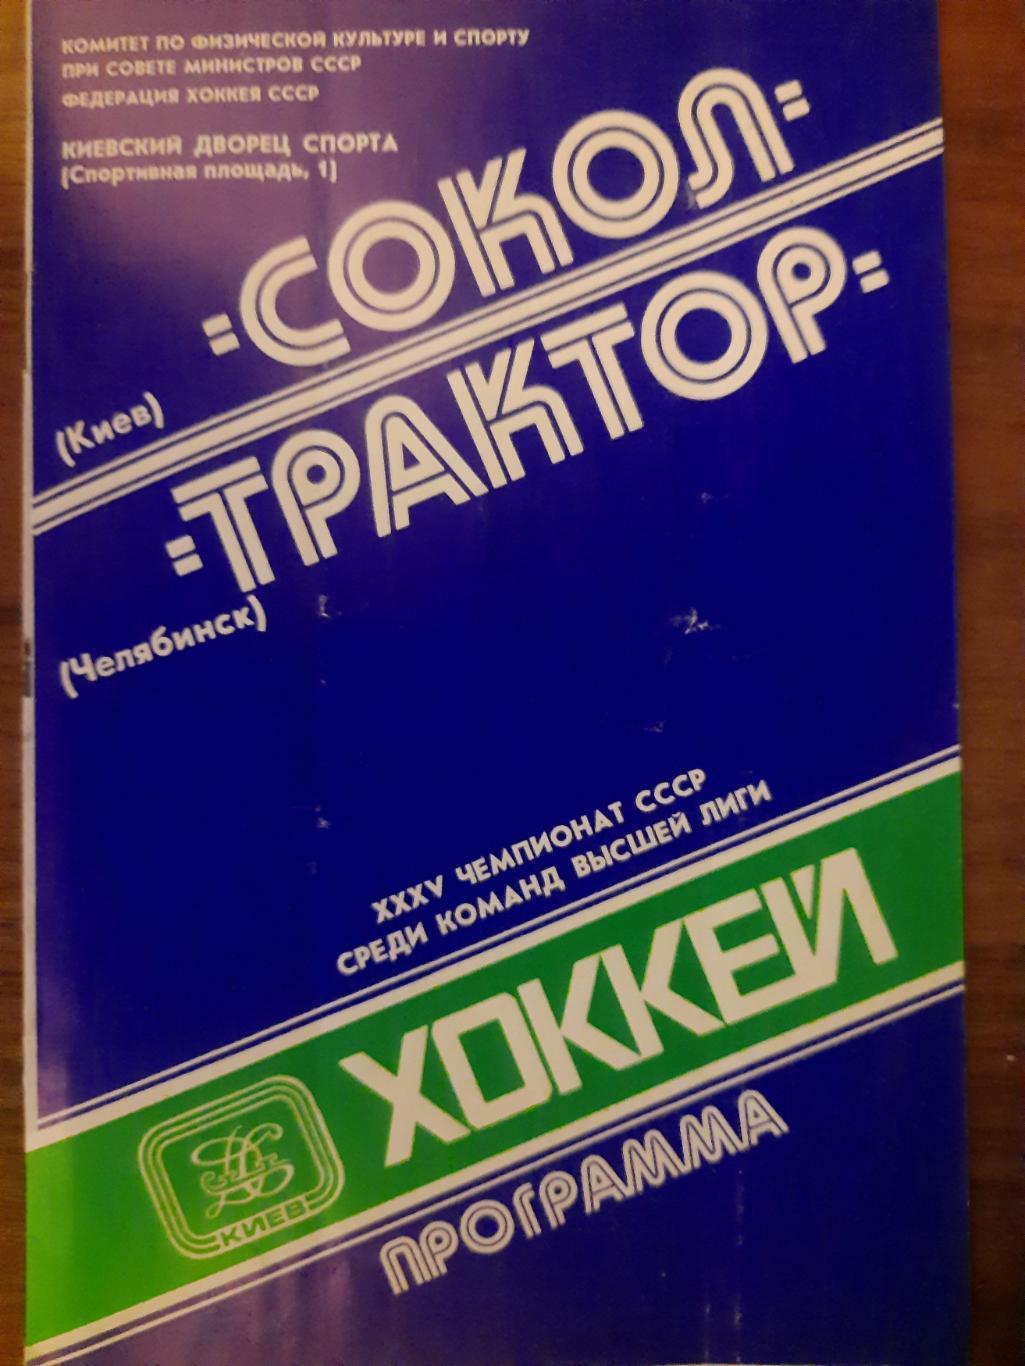 Сокол Киев - Трактор Челябинск 27.10.1980